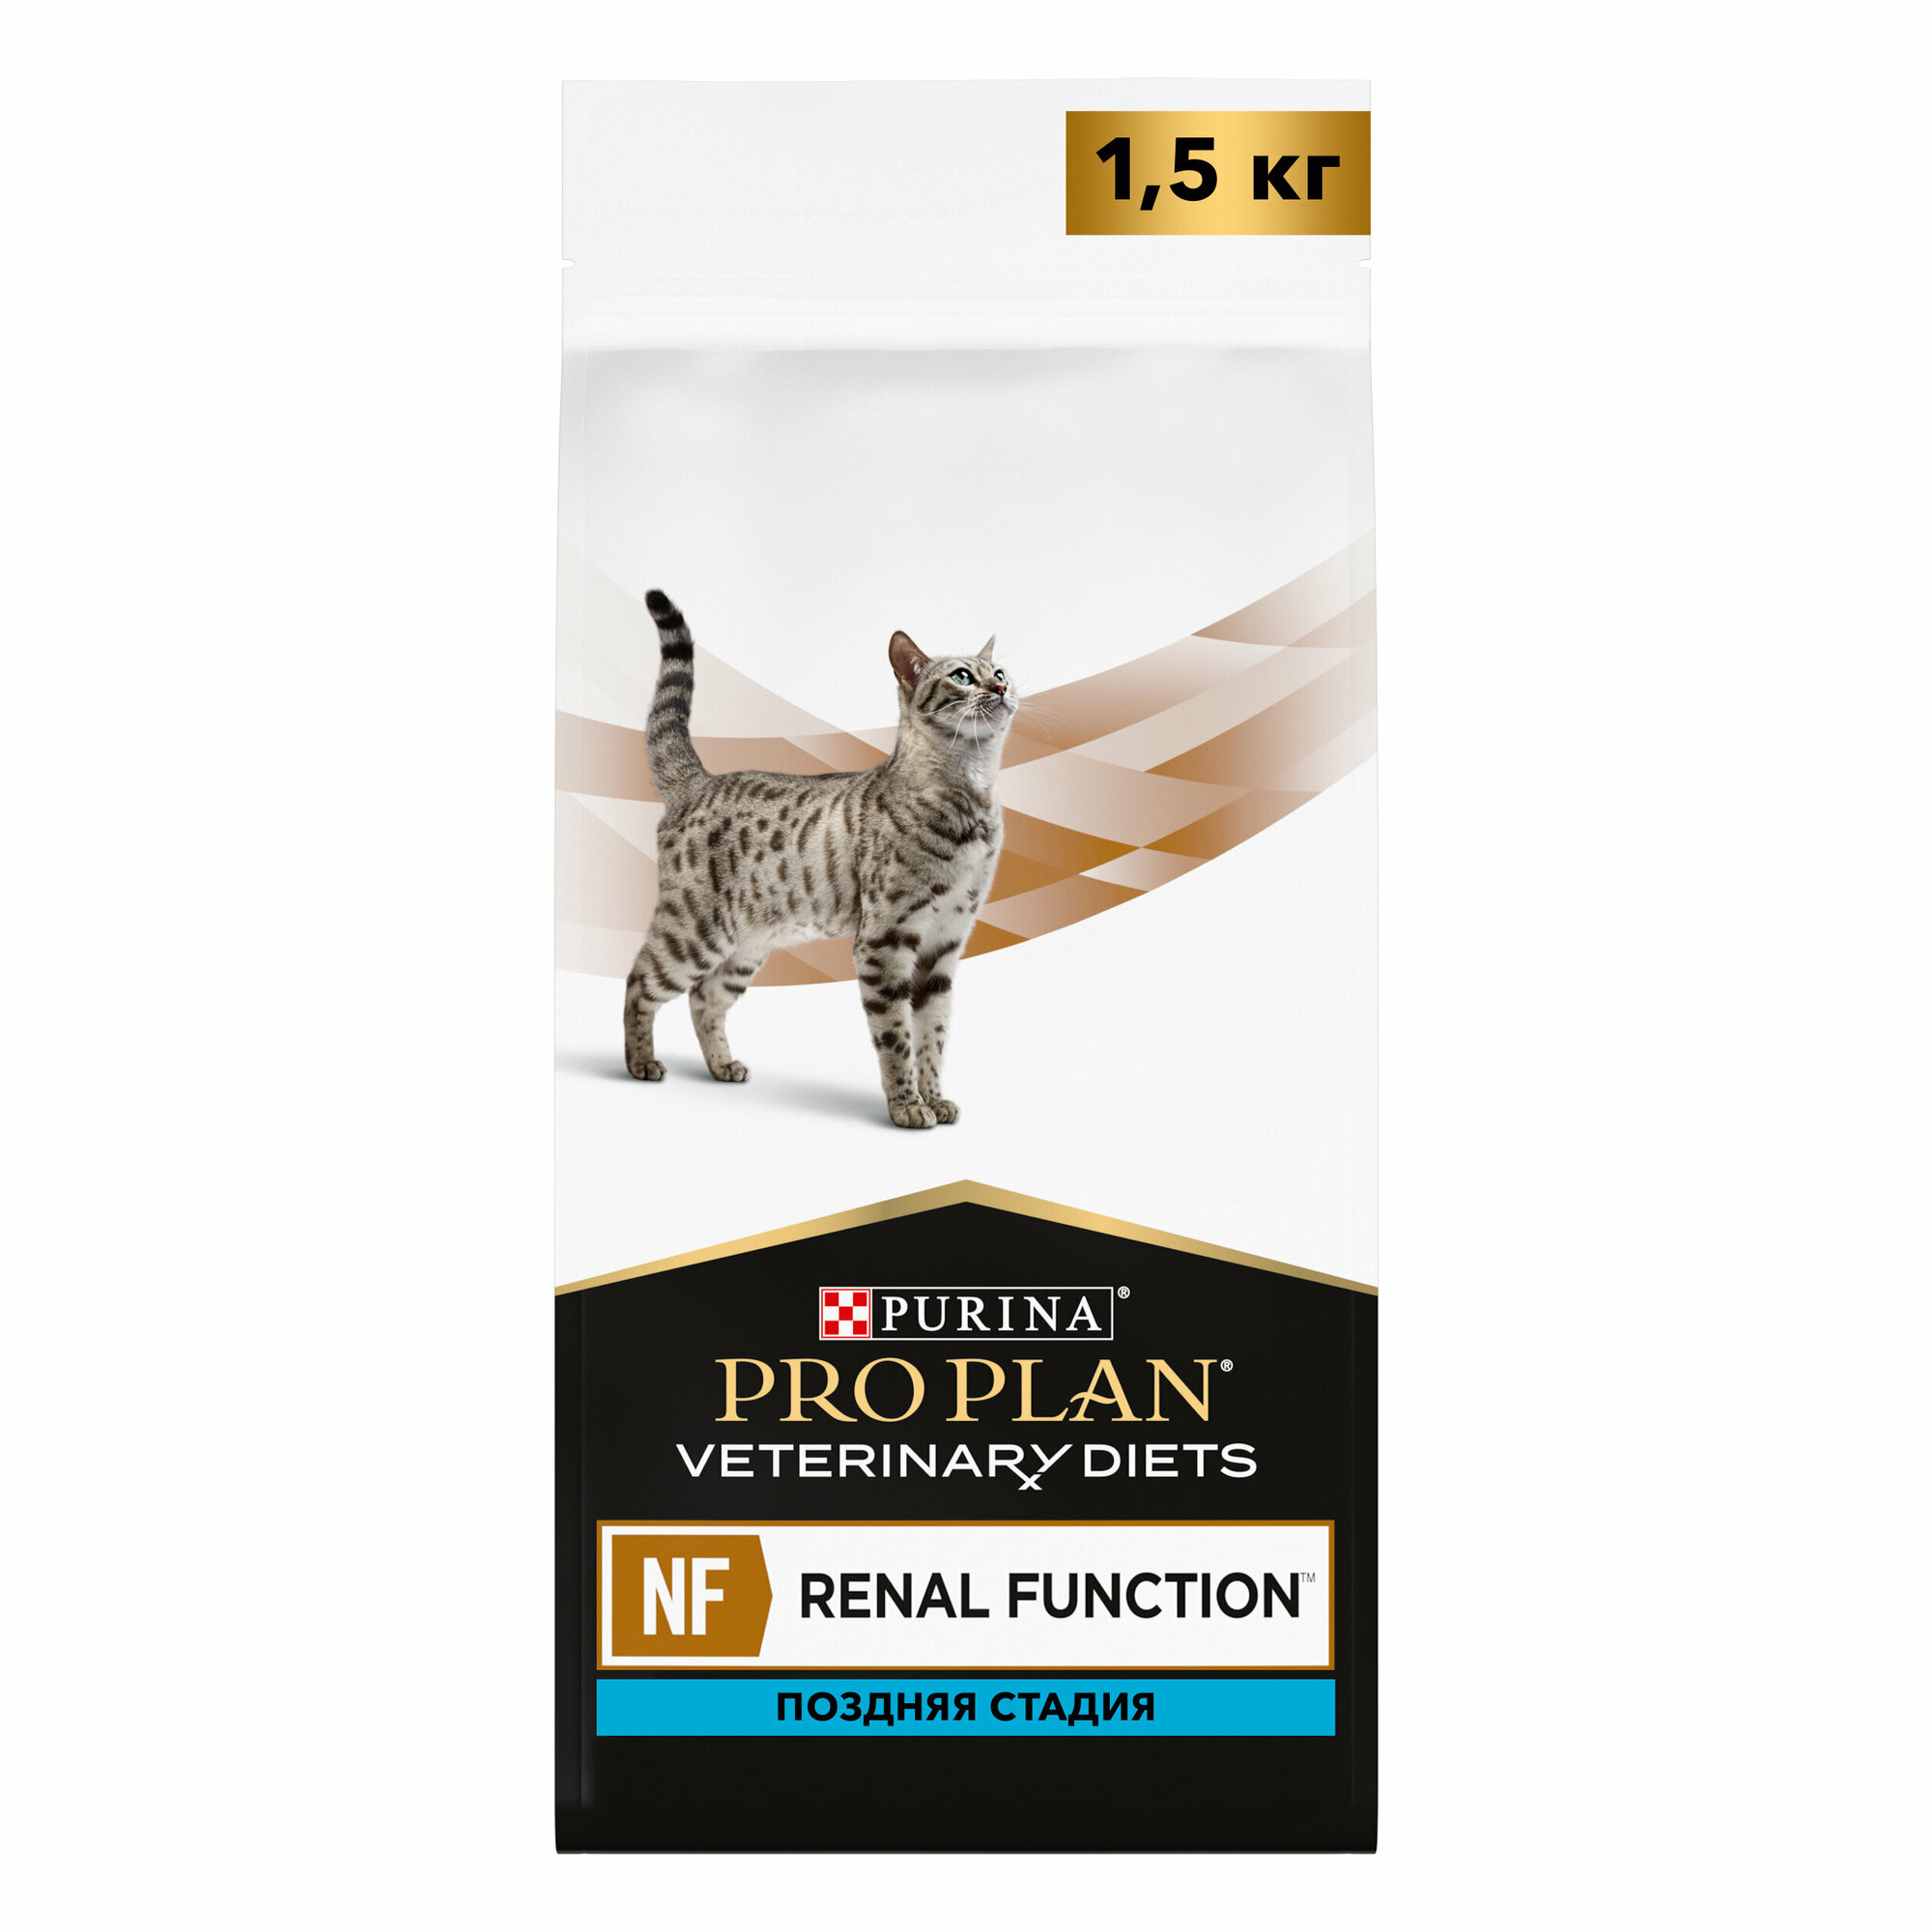 Сухой корм для кошек Purina Pro Plan Veterinary Diets NF Renal Function Advanced Care, при поздней стадии почечной недостаточности, 1.5 кг